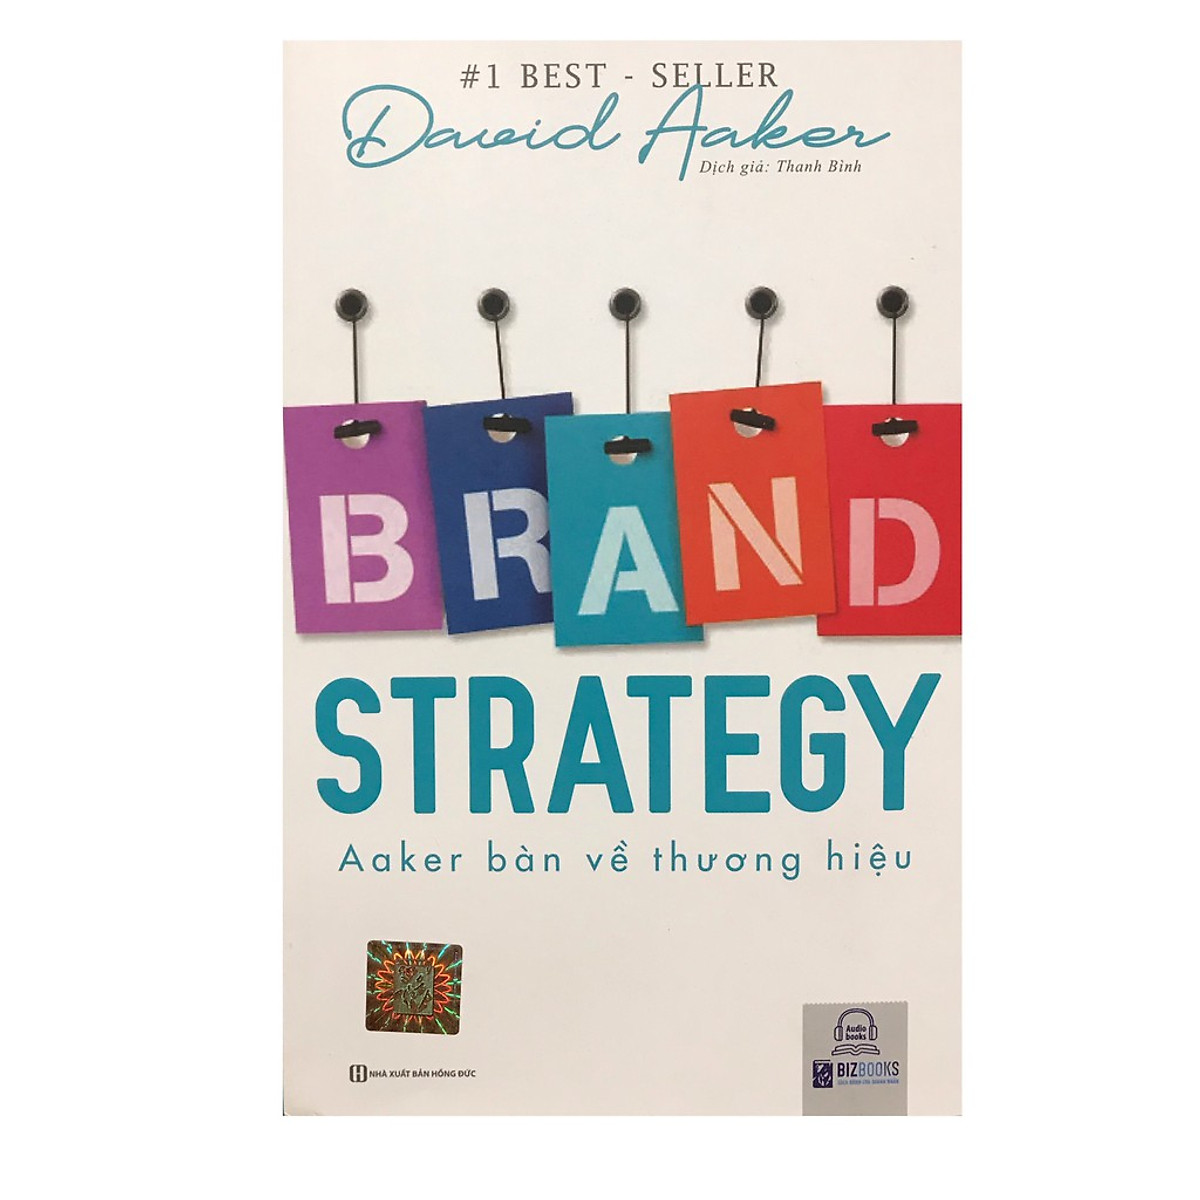 Brand Strategy: Aaker bàn về Thương hiệu